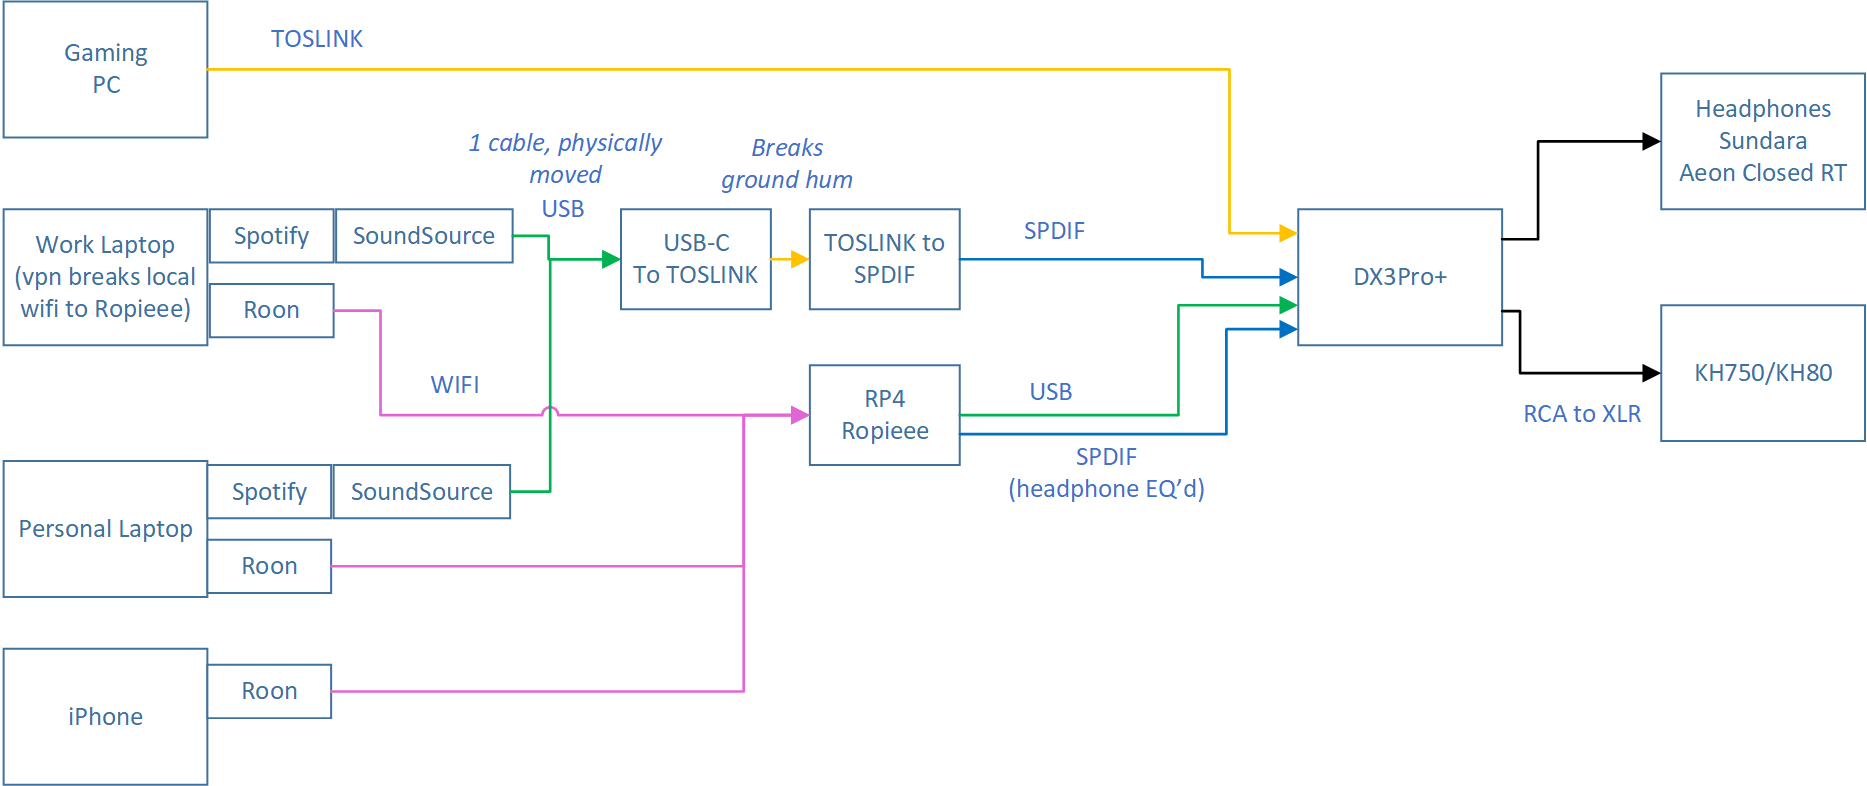 wiring_diagram.png